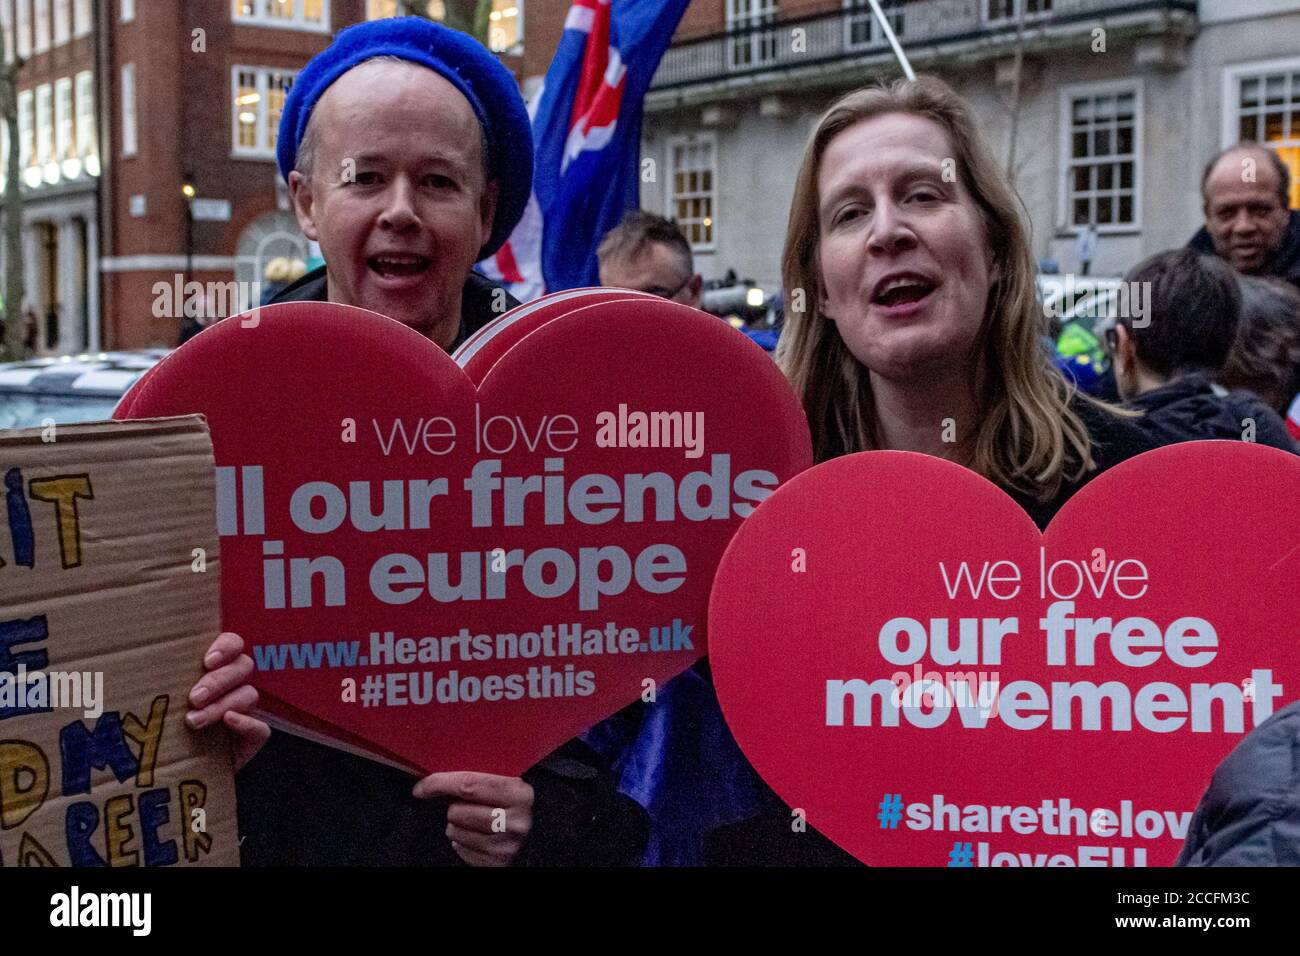 London, England.zwei bleiben Unterstützer, die vor dem Europahaus in Westminster stehen, mit "Herzen statt Hass"-Plakaten, die die Vorteile beschreiben, am Vorabend des Austritts des Vereinigten Königreichs aus der Europäischen Union um 11 Uhr am Freitag, dem 31. Januar 2020, in der EU zu sein, basierend auf dem Verweis vom 23. Juni 2016. Stockfoto